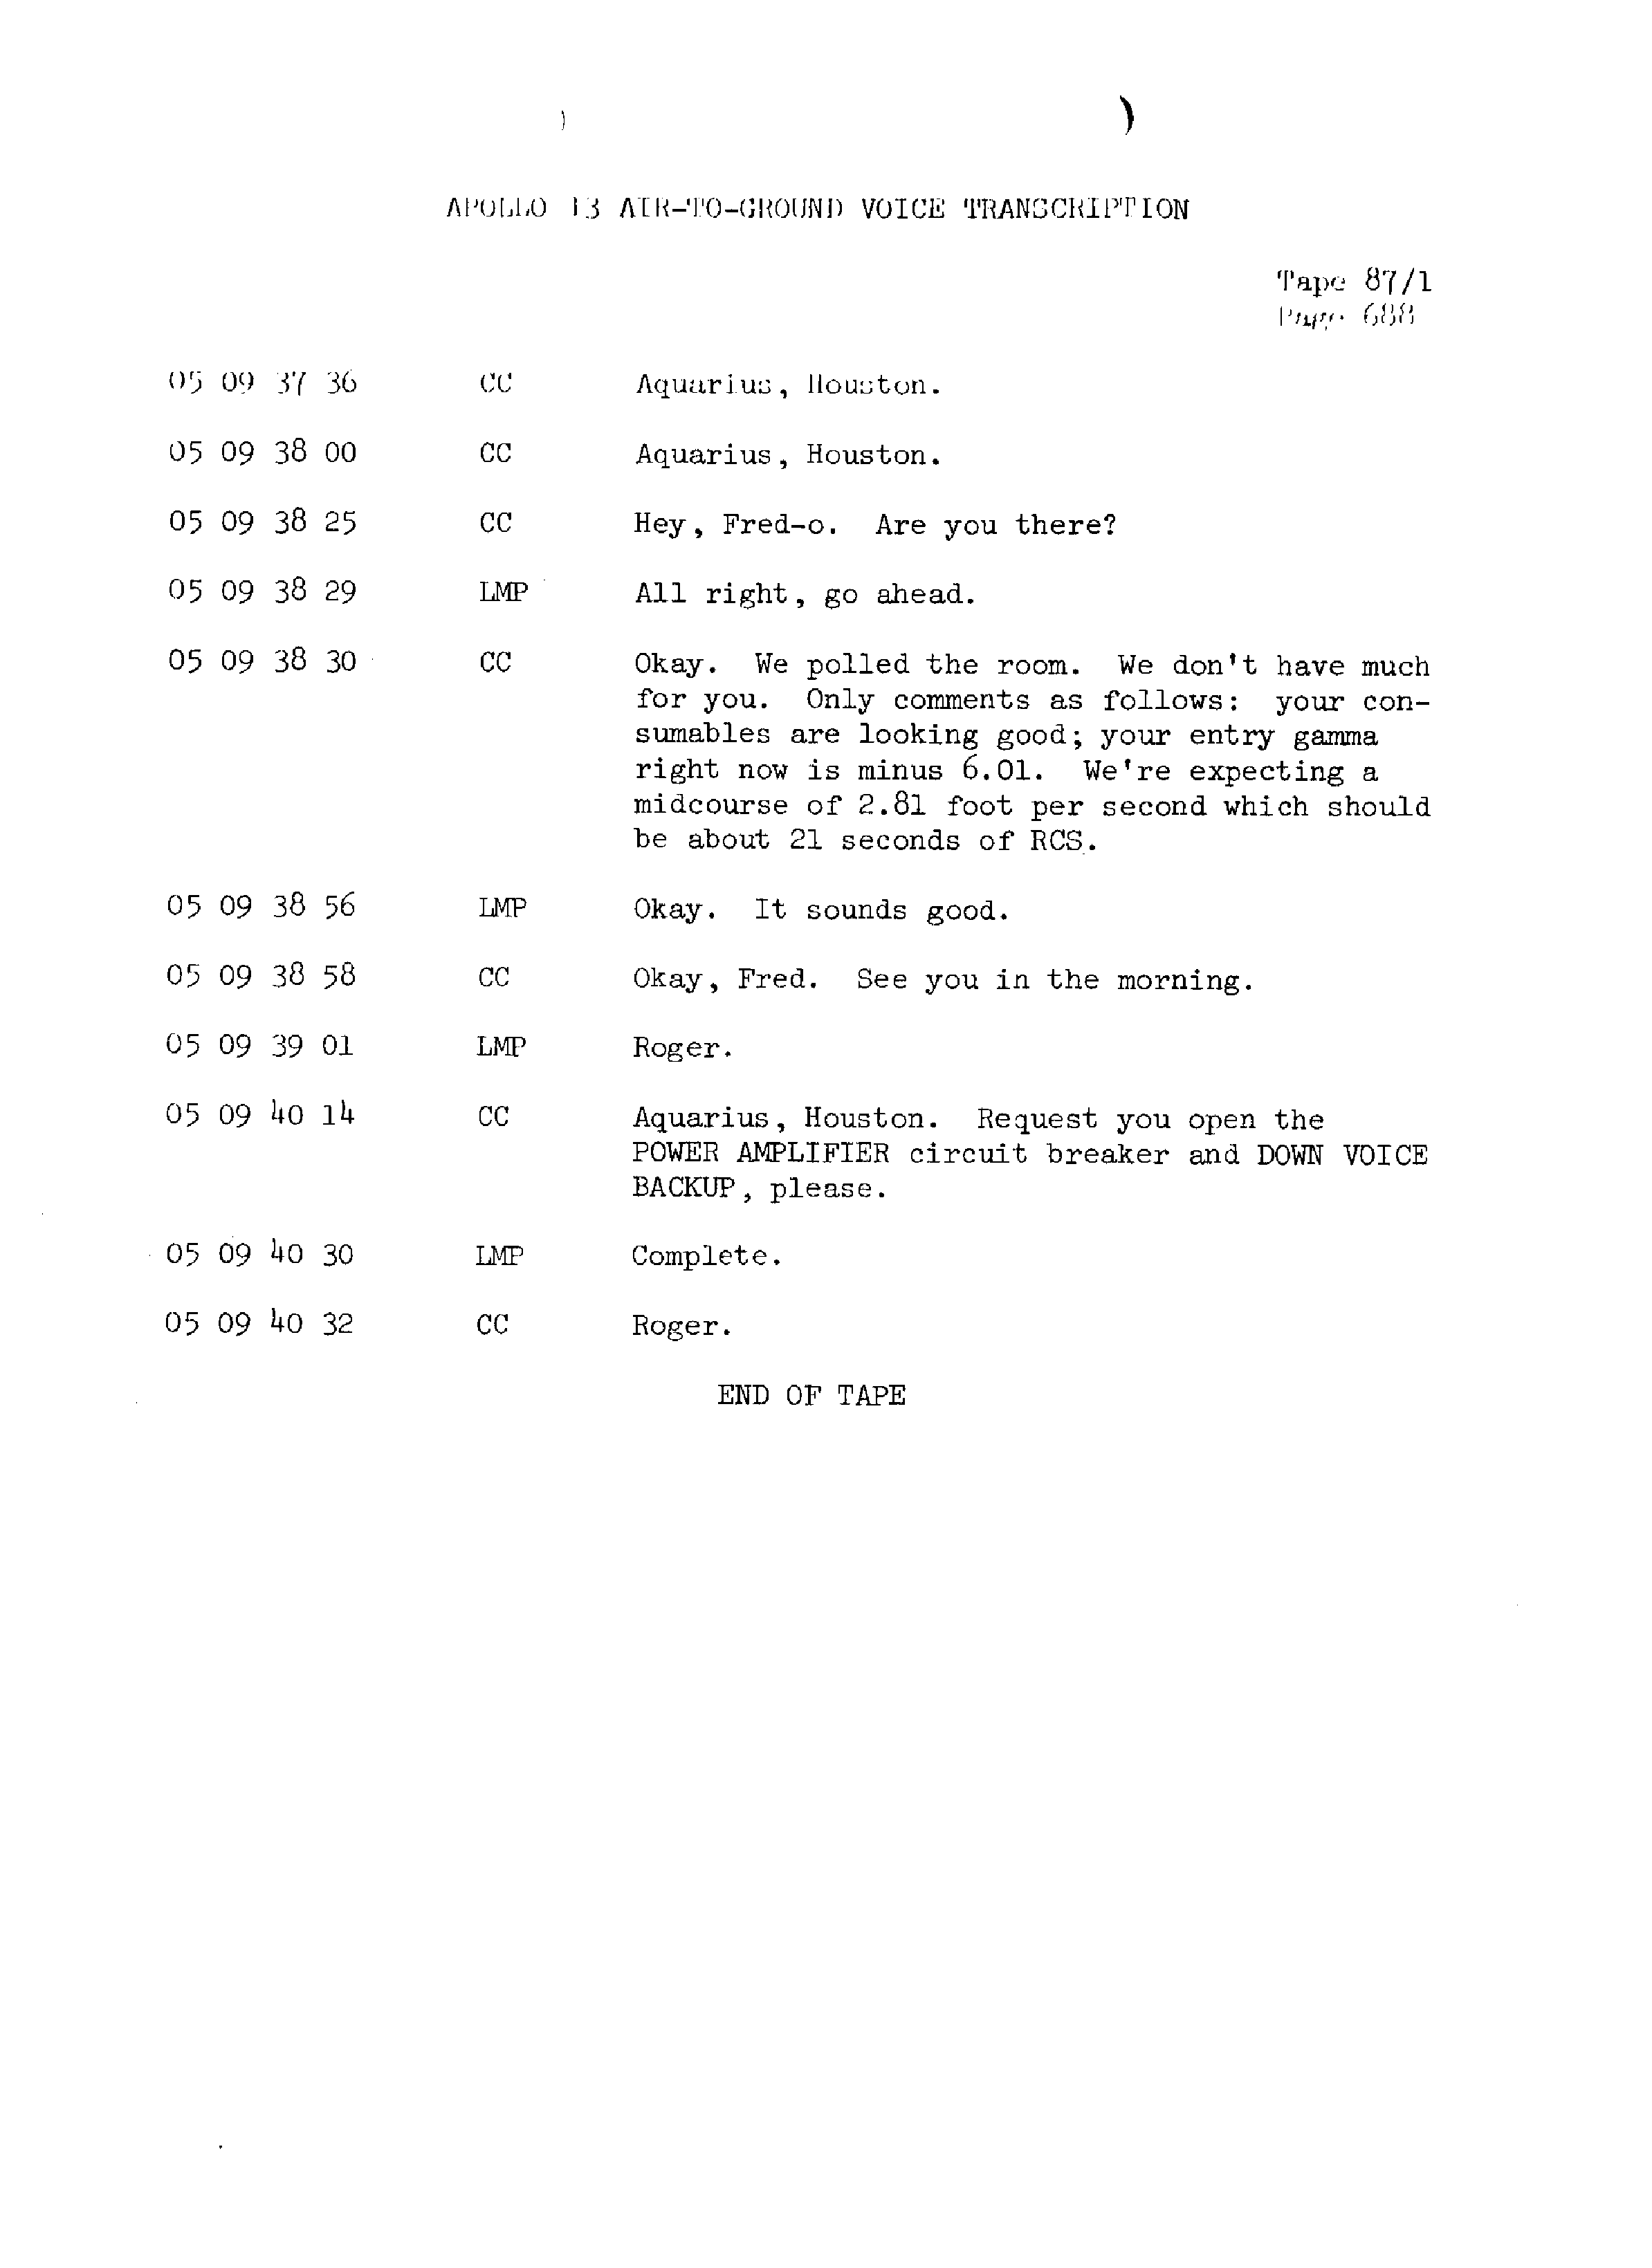 Page 695 of Apollo 13’s original transcript